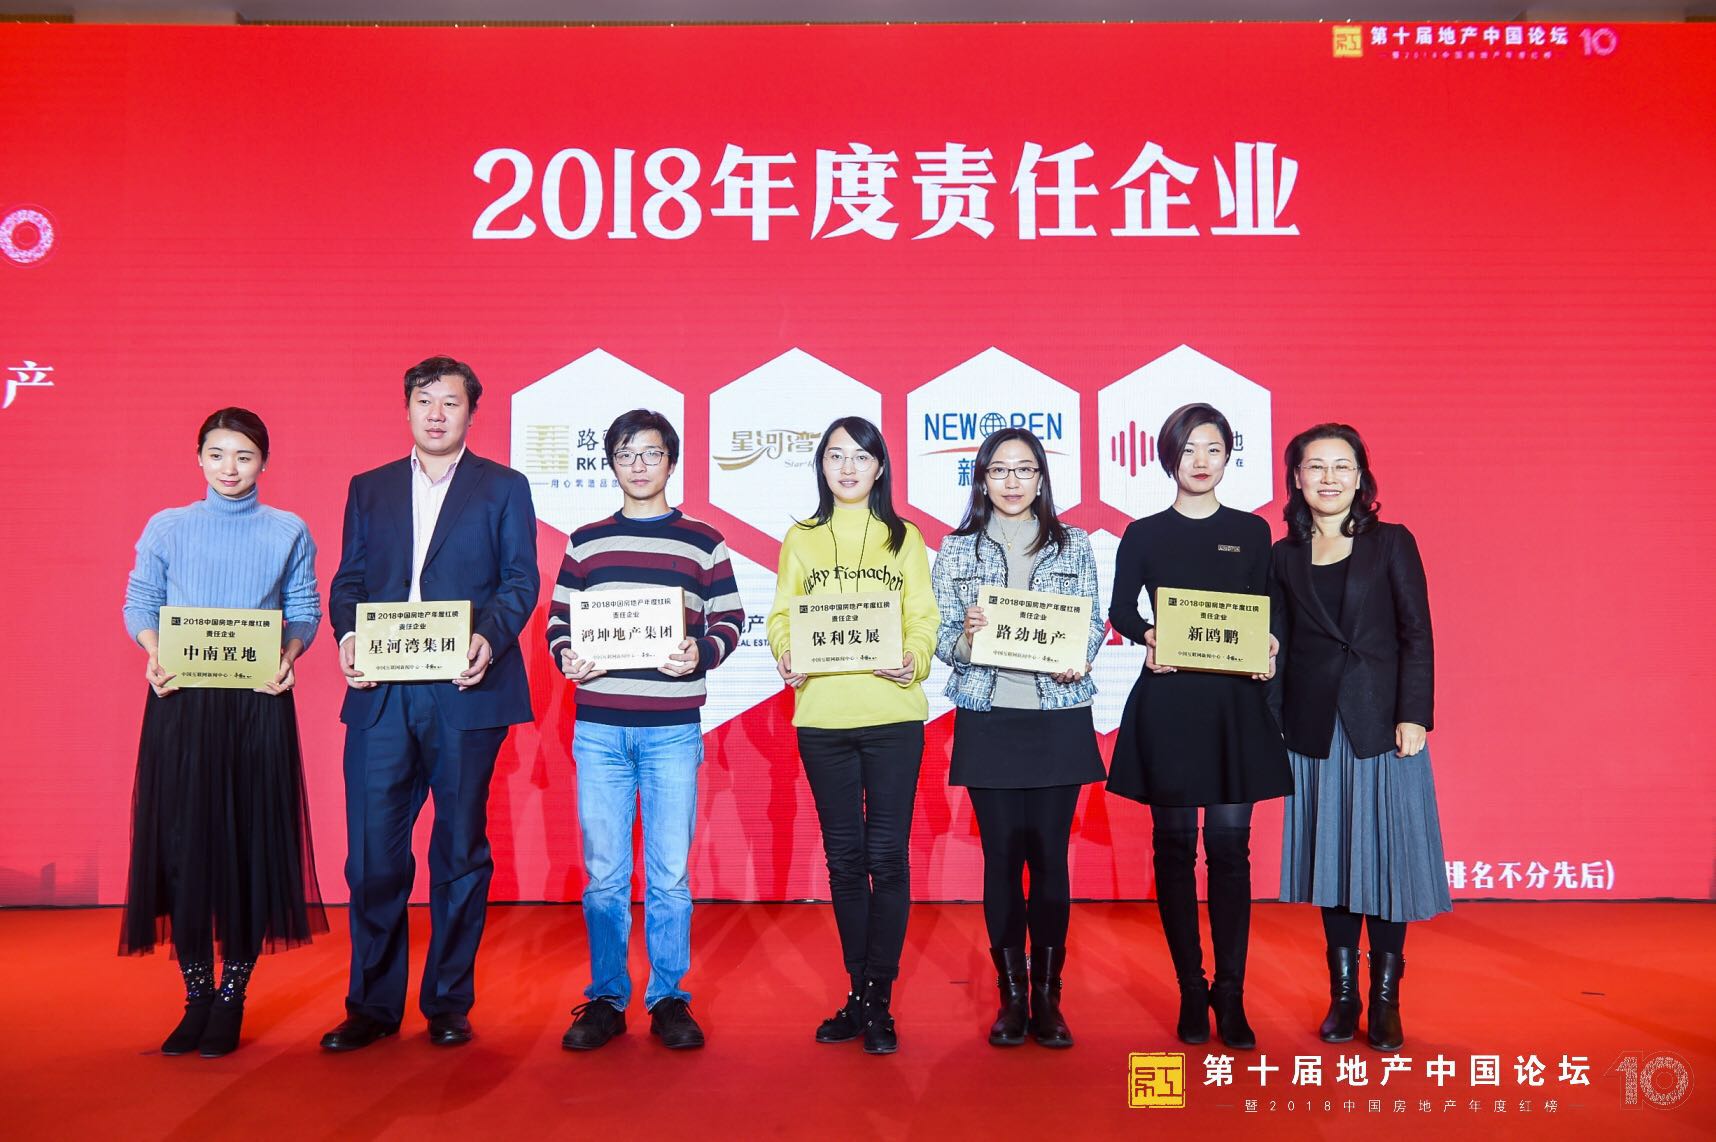 星河湾当选“2018中国房地产年度责任企业” -中国网地产